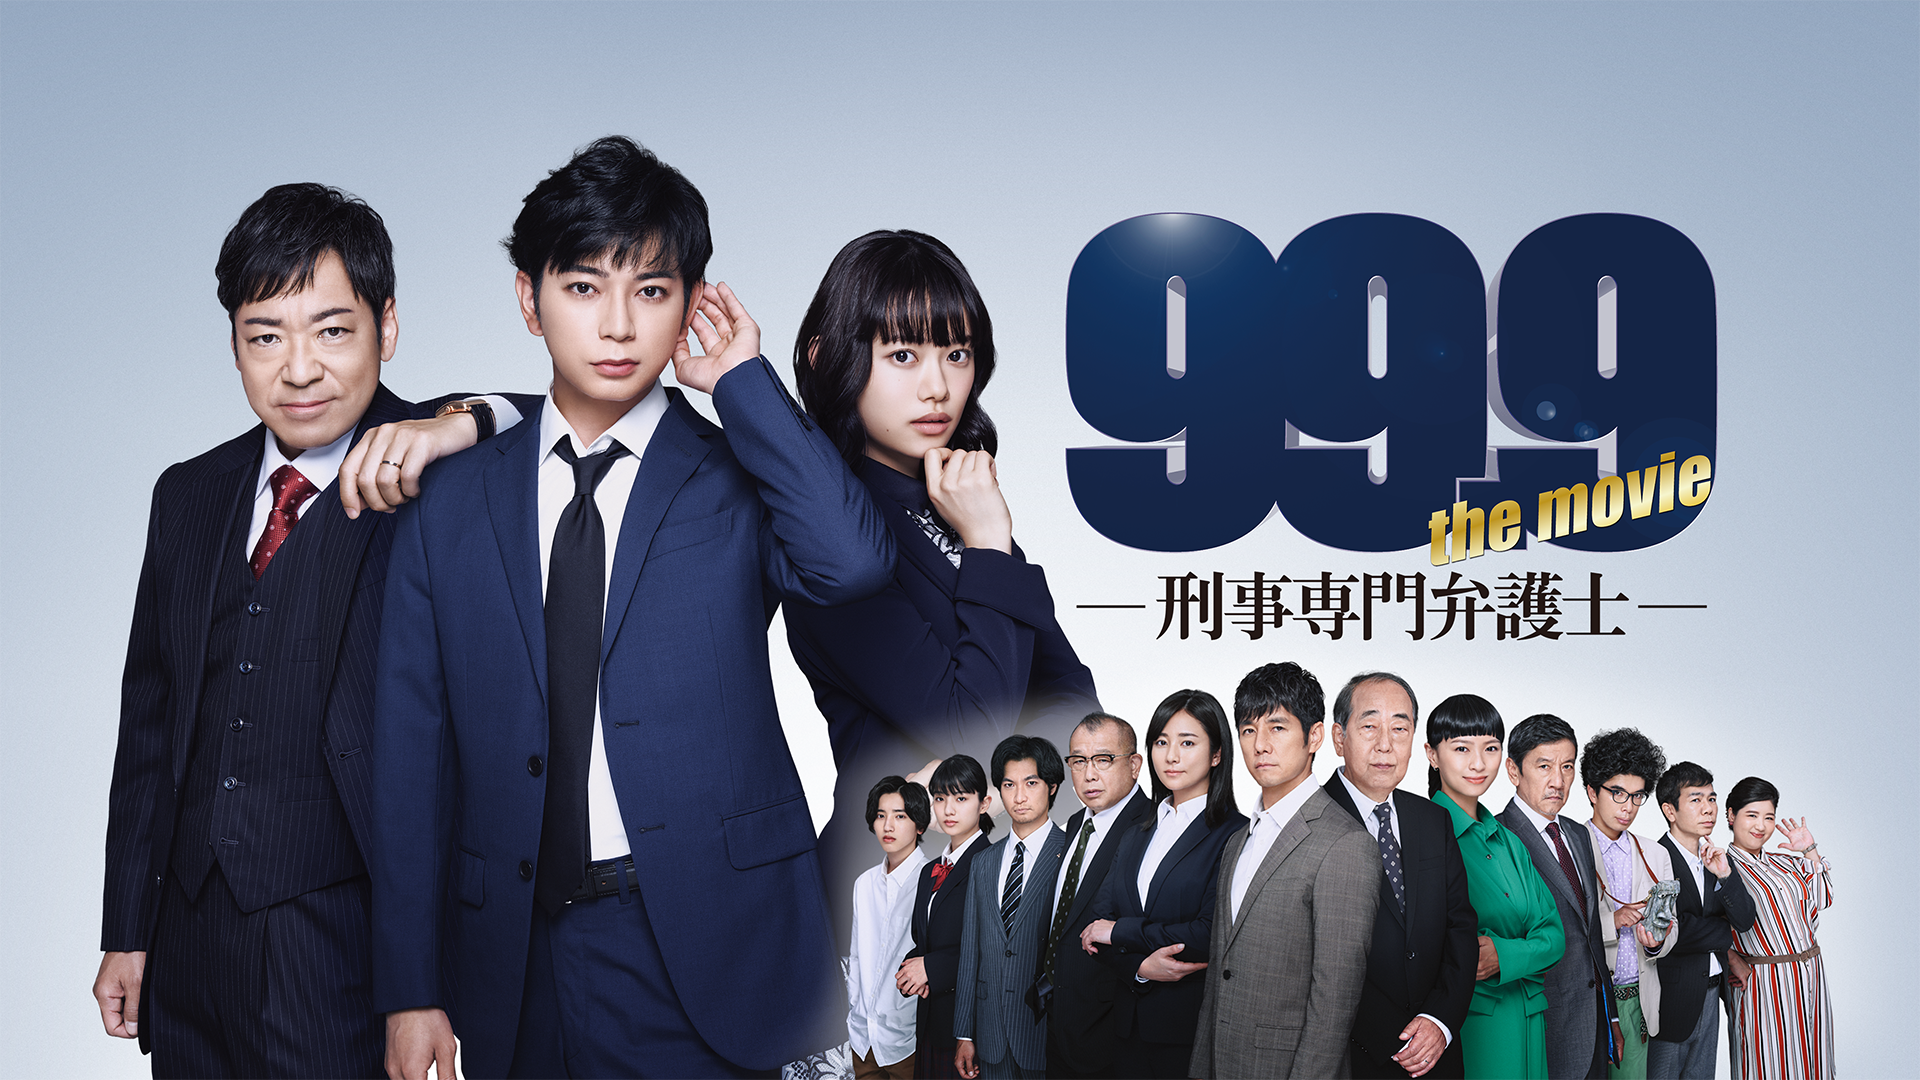 99.9-刑事専門弁護士-THE MOVIE(邦画 / 2021) - 動画配信 | U-NEXT 